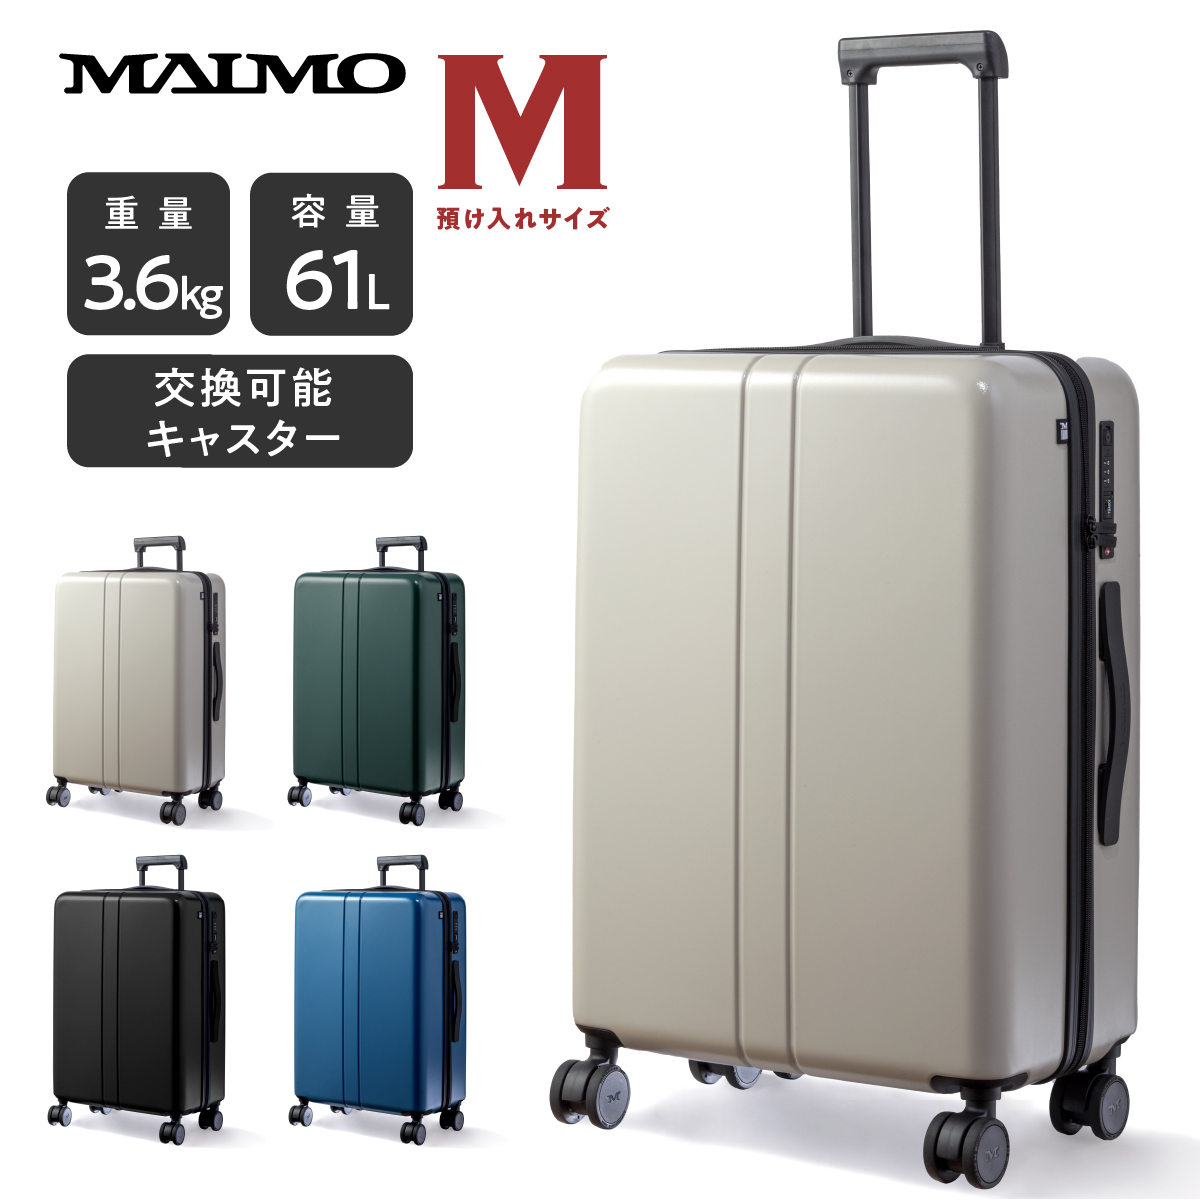 スーツケース キャリーケース MAIMO公式 キャリーバッグ Mサイズ 日本 